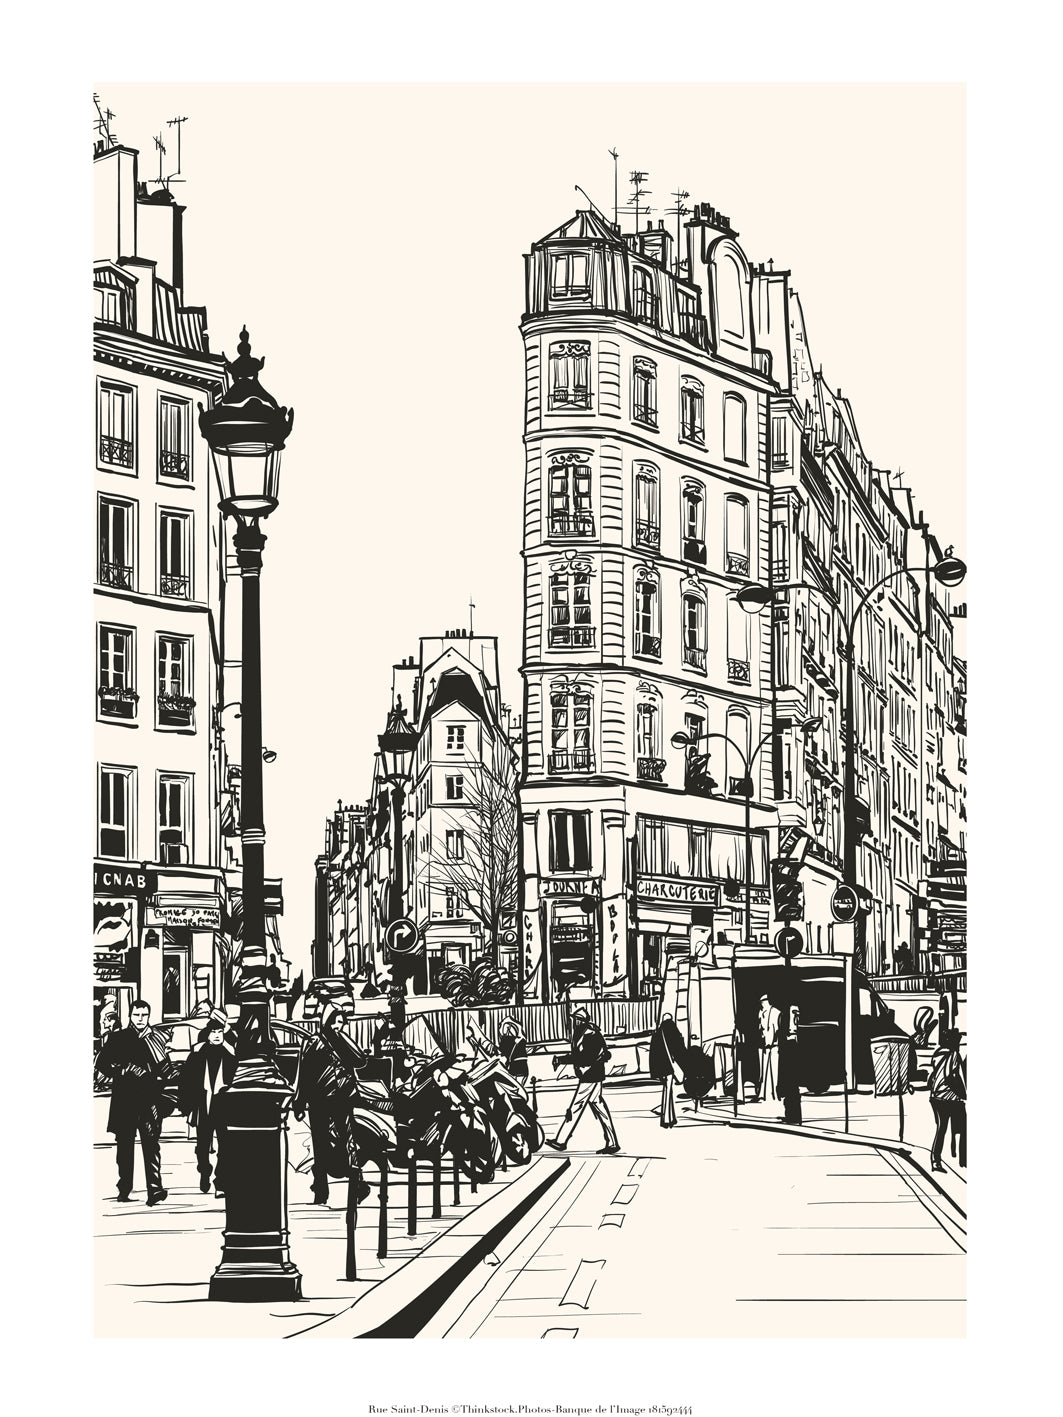 Illustration de la Rue St-Denis